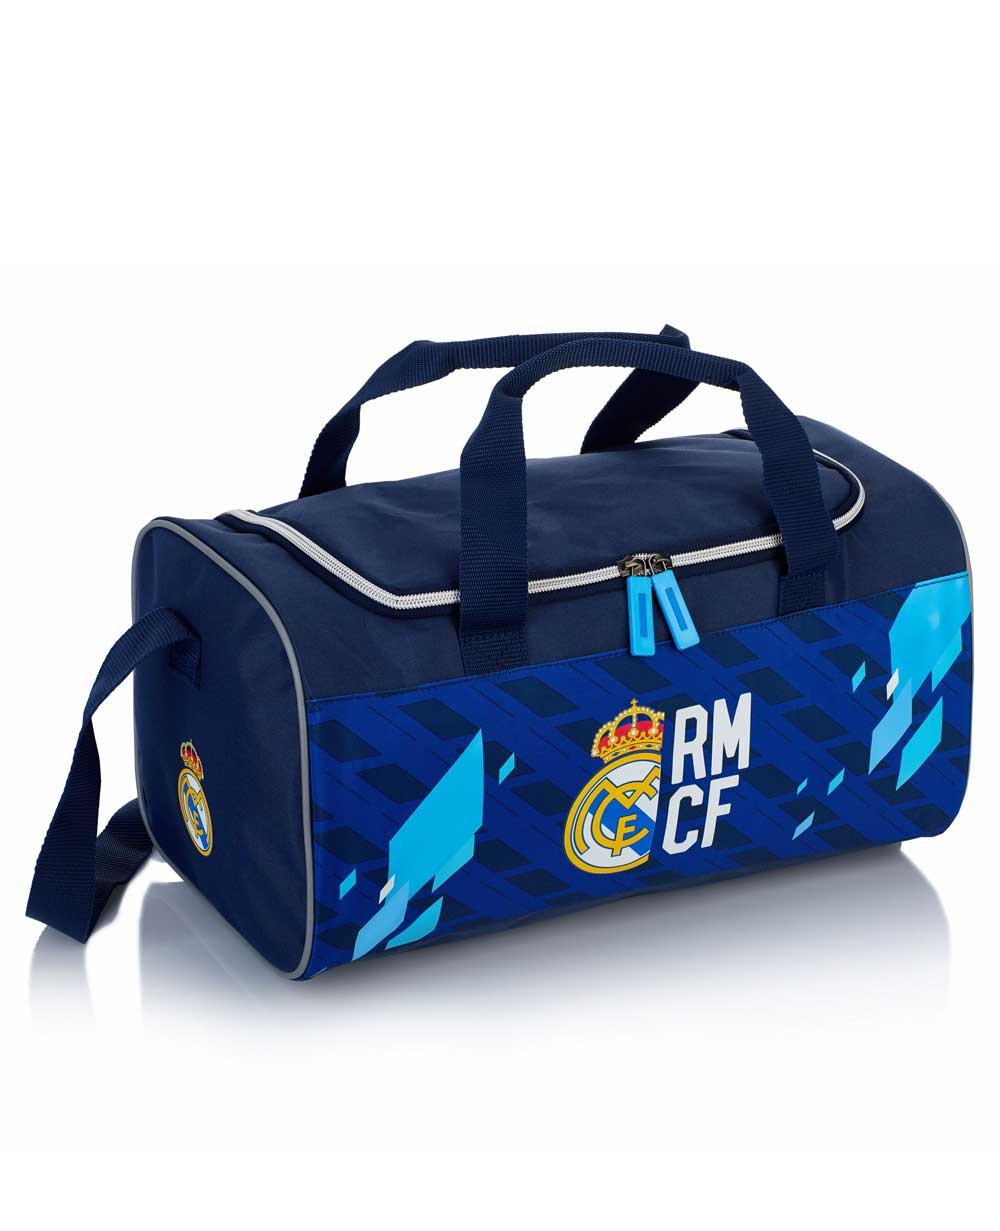 Магазин спортивных сумок. Спортивная сумка mo755104 Blue. Сумка real Madrid. Спортивная сумка Реал Мадрид. Сумка адидас синяя спортивная.